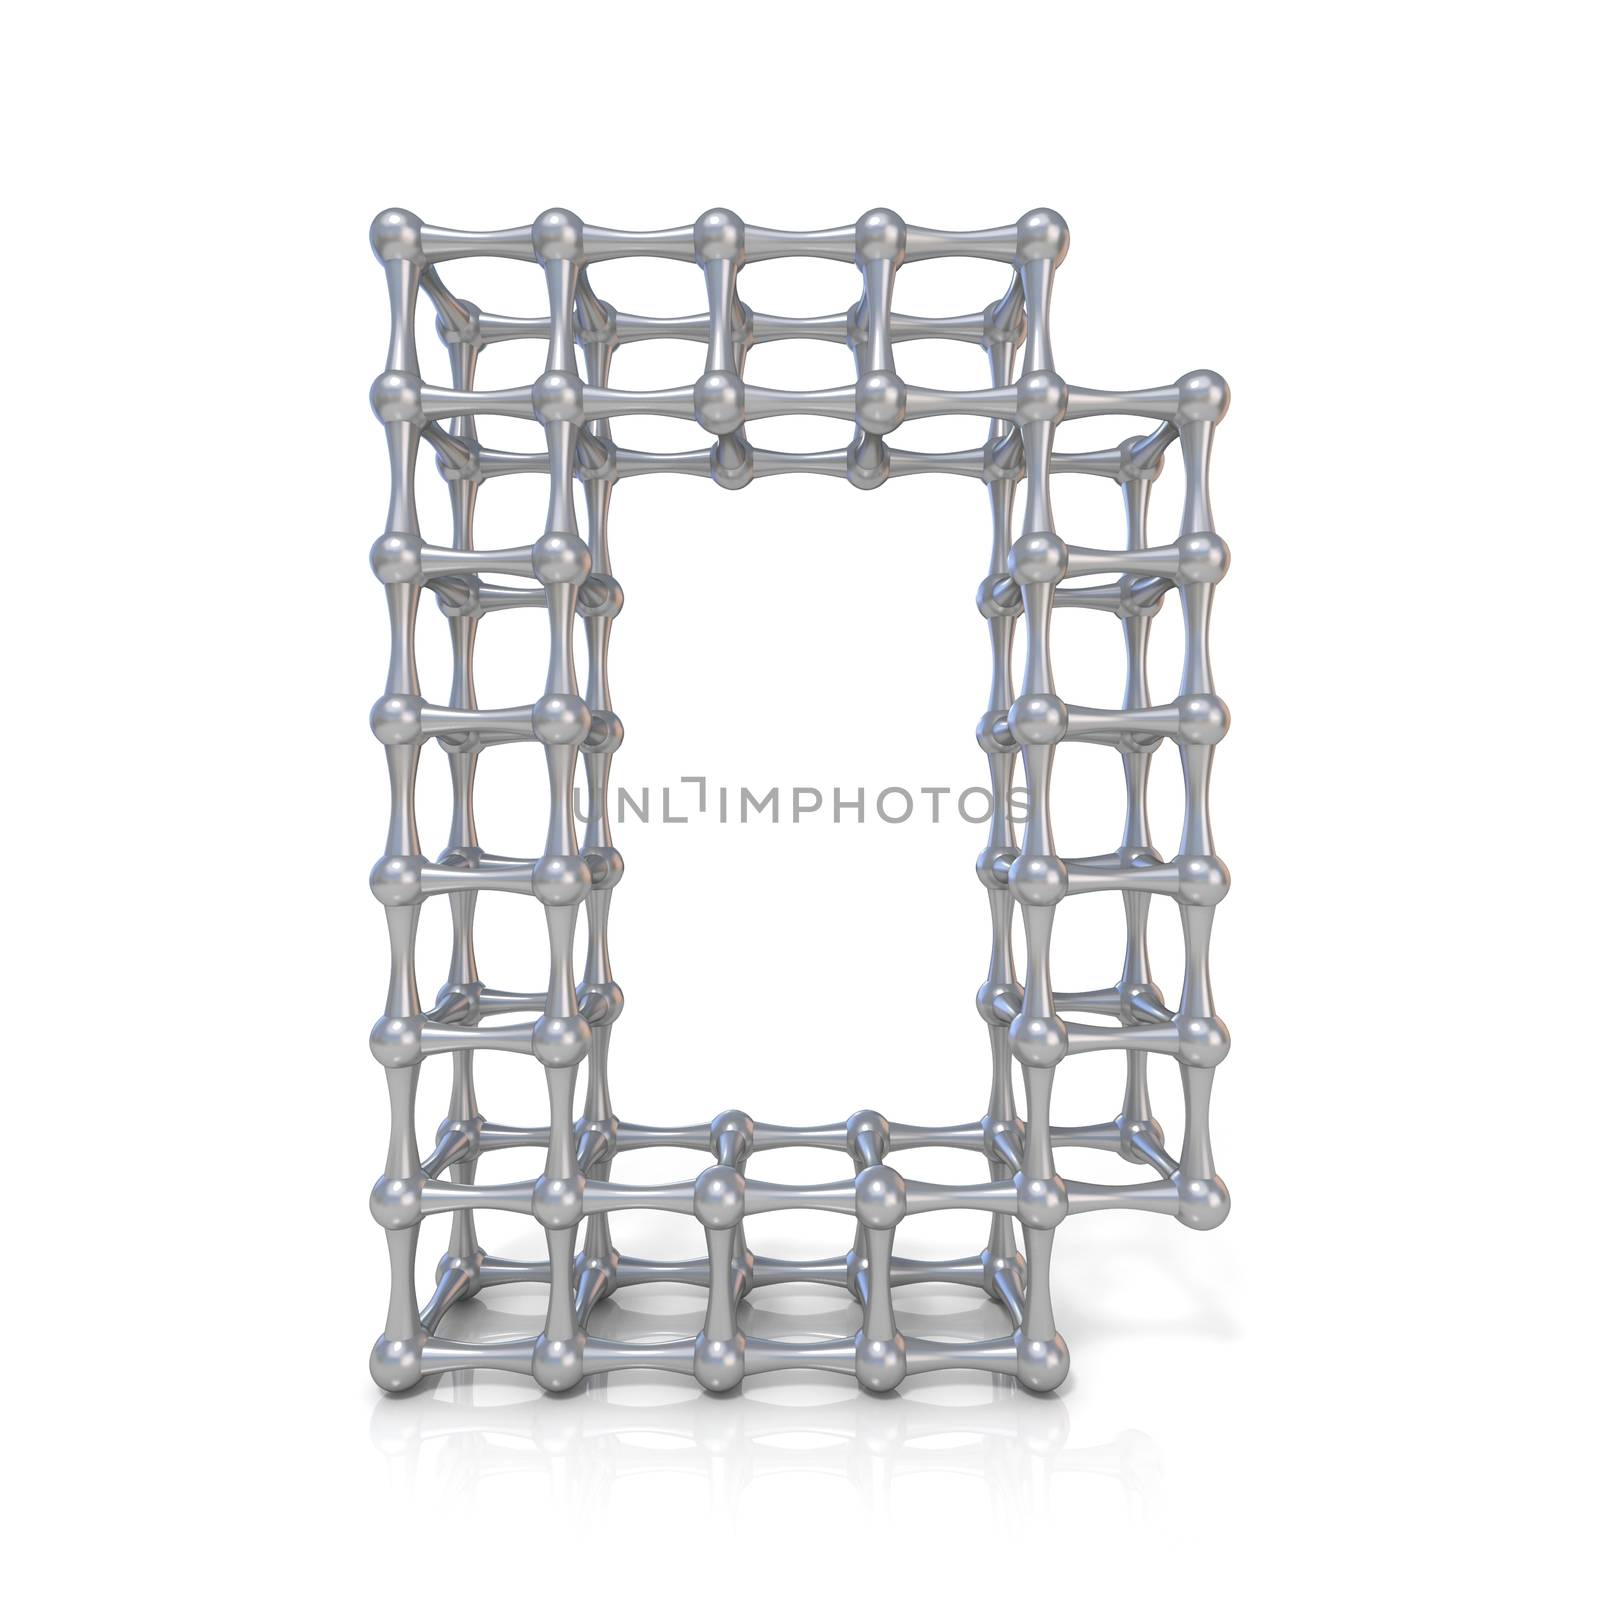 Metal lattice font letter D 3D by djmilic